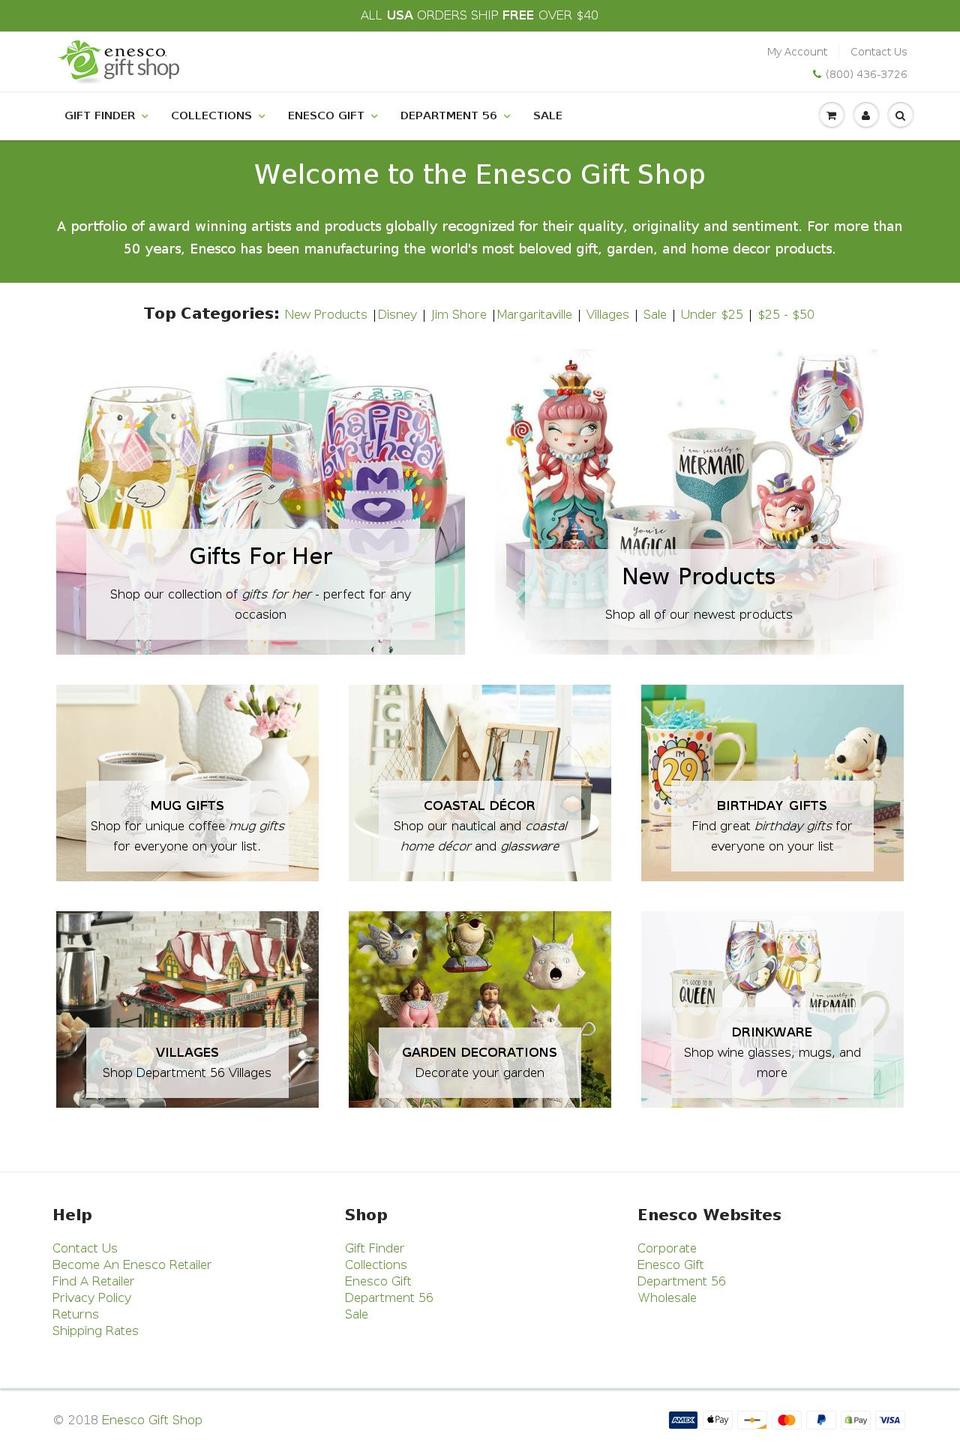 e-gift.gifts shopify website screenshot